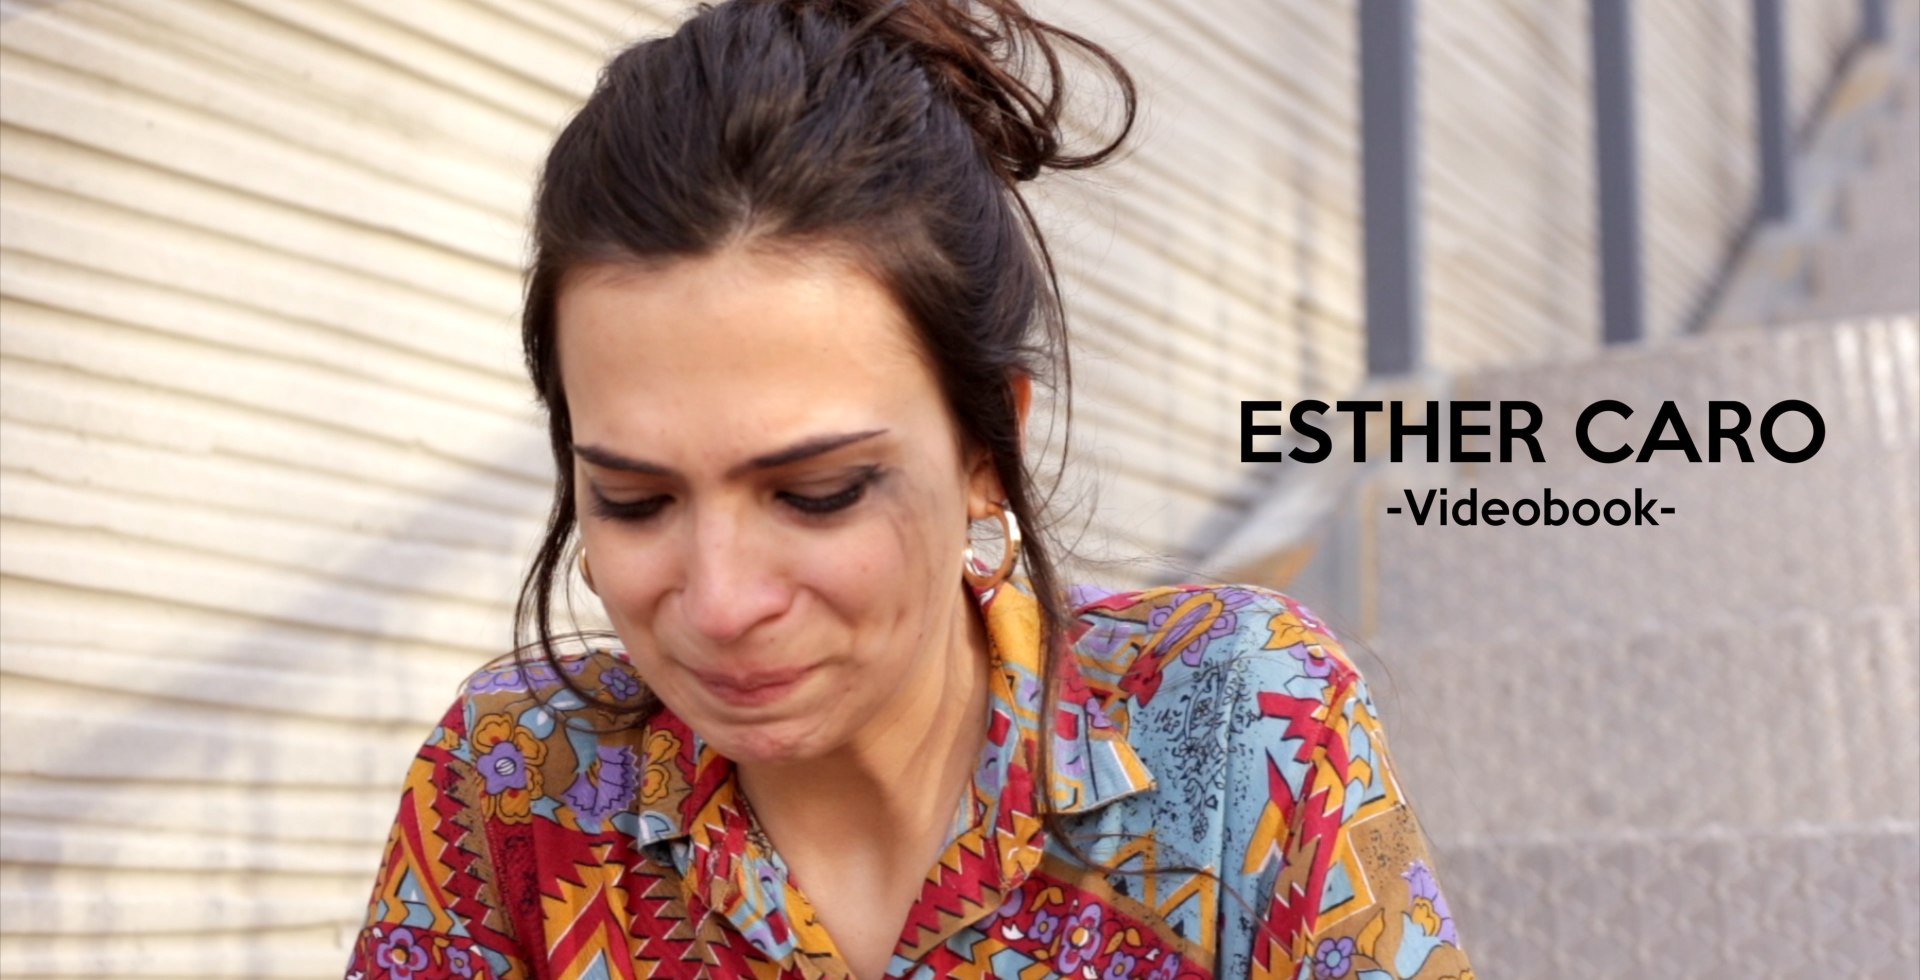 imagen del vídeobook de la actriz Esther Caro